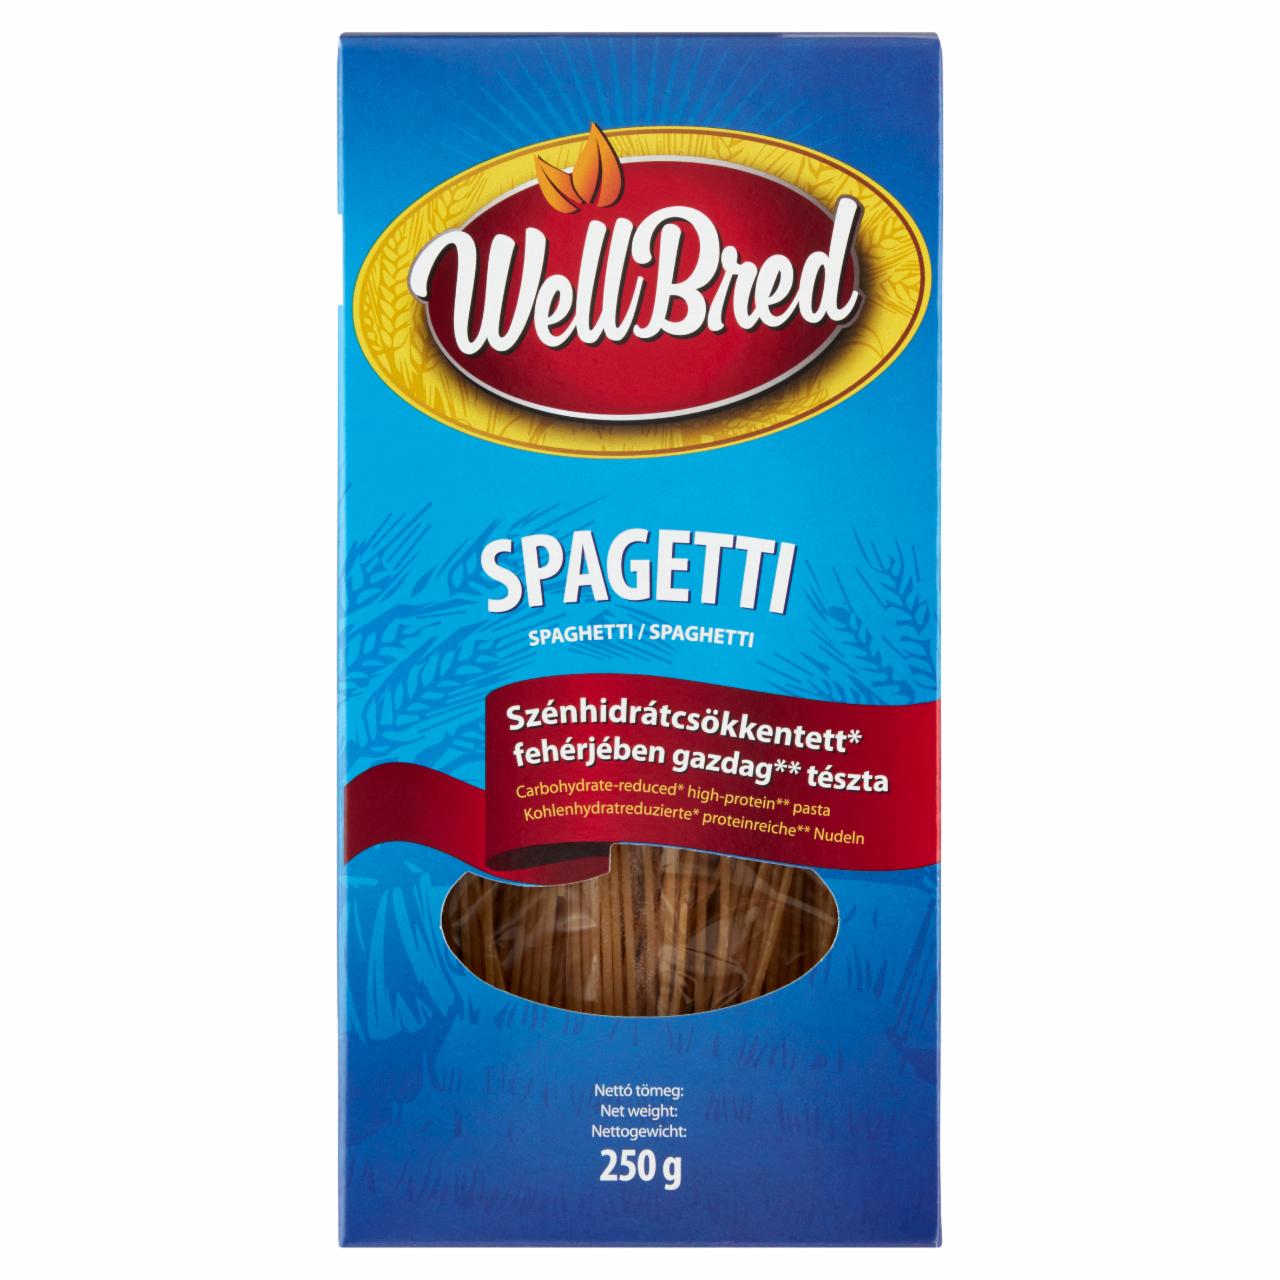 Képek - WellBred szénhidrátcsökkentett, fehérjében gazdag spagetti tészta 250 g